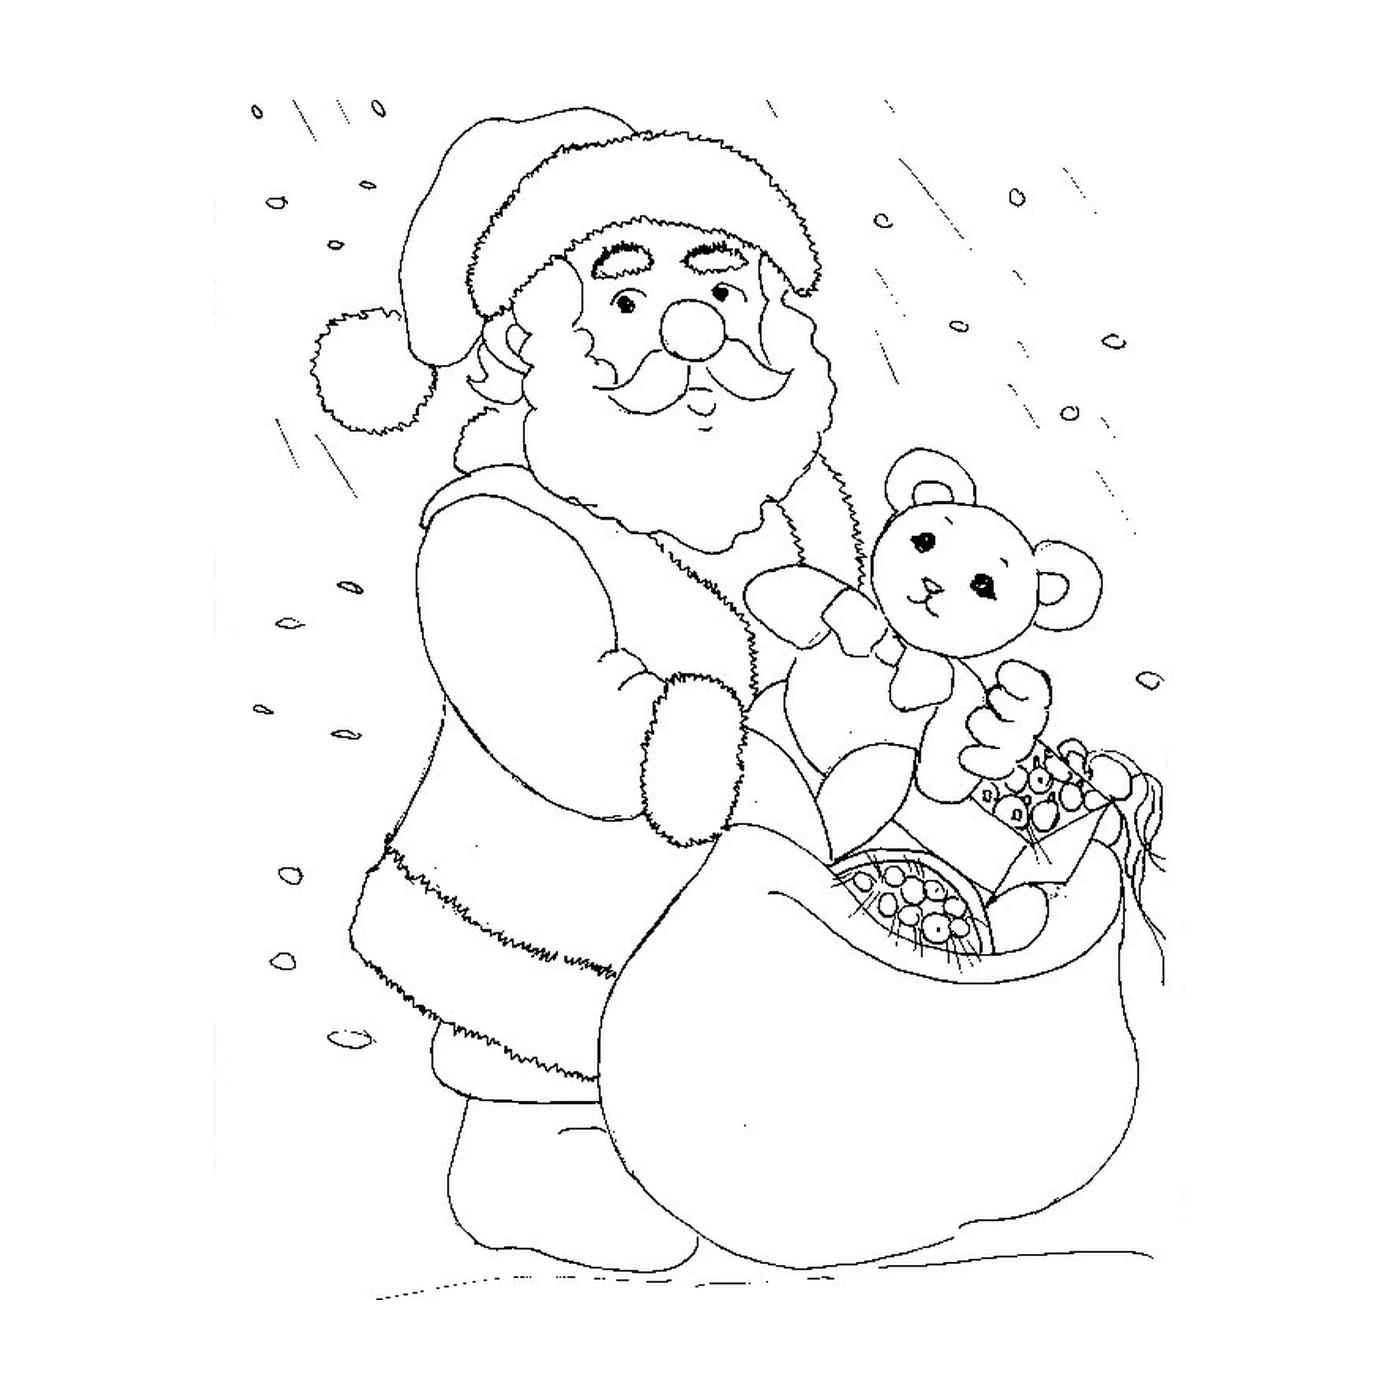  Санта держит плюшевого медведя 